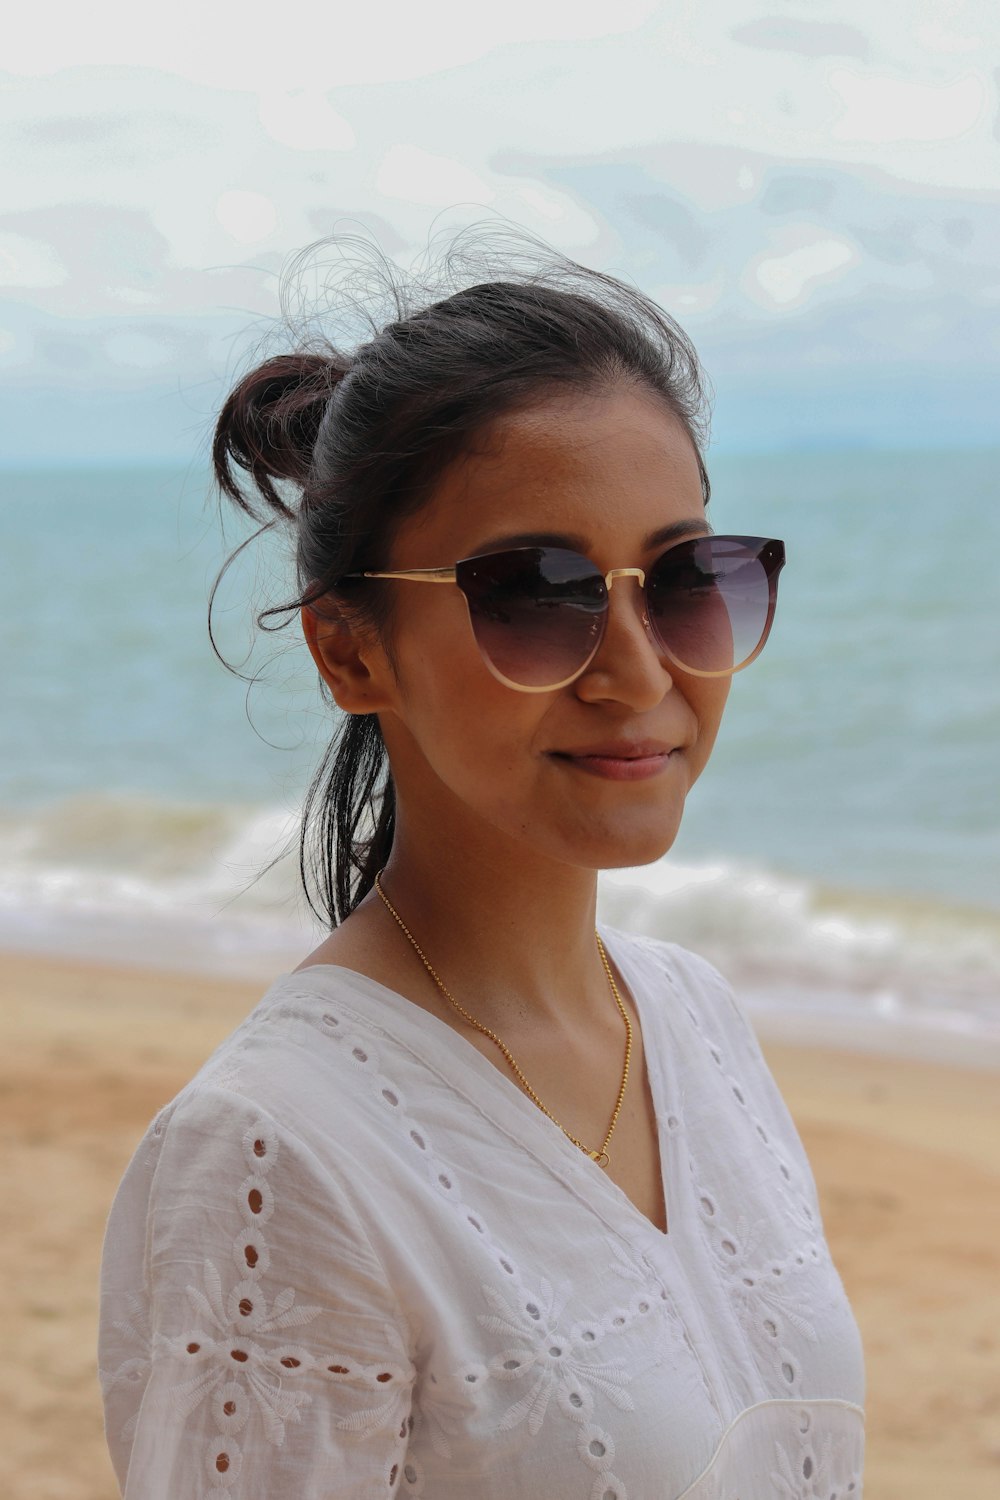 mulher na camisa branca que veste óculos de sol em pé na praia durante o dia